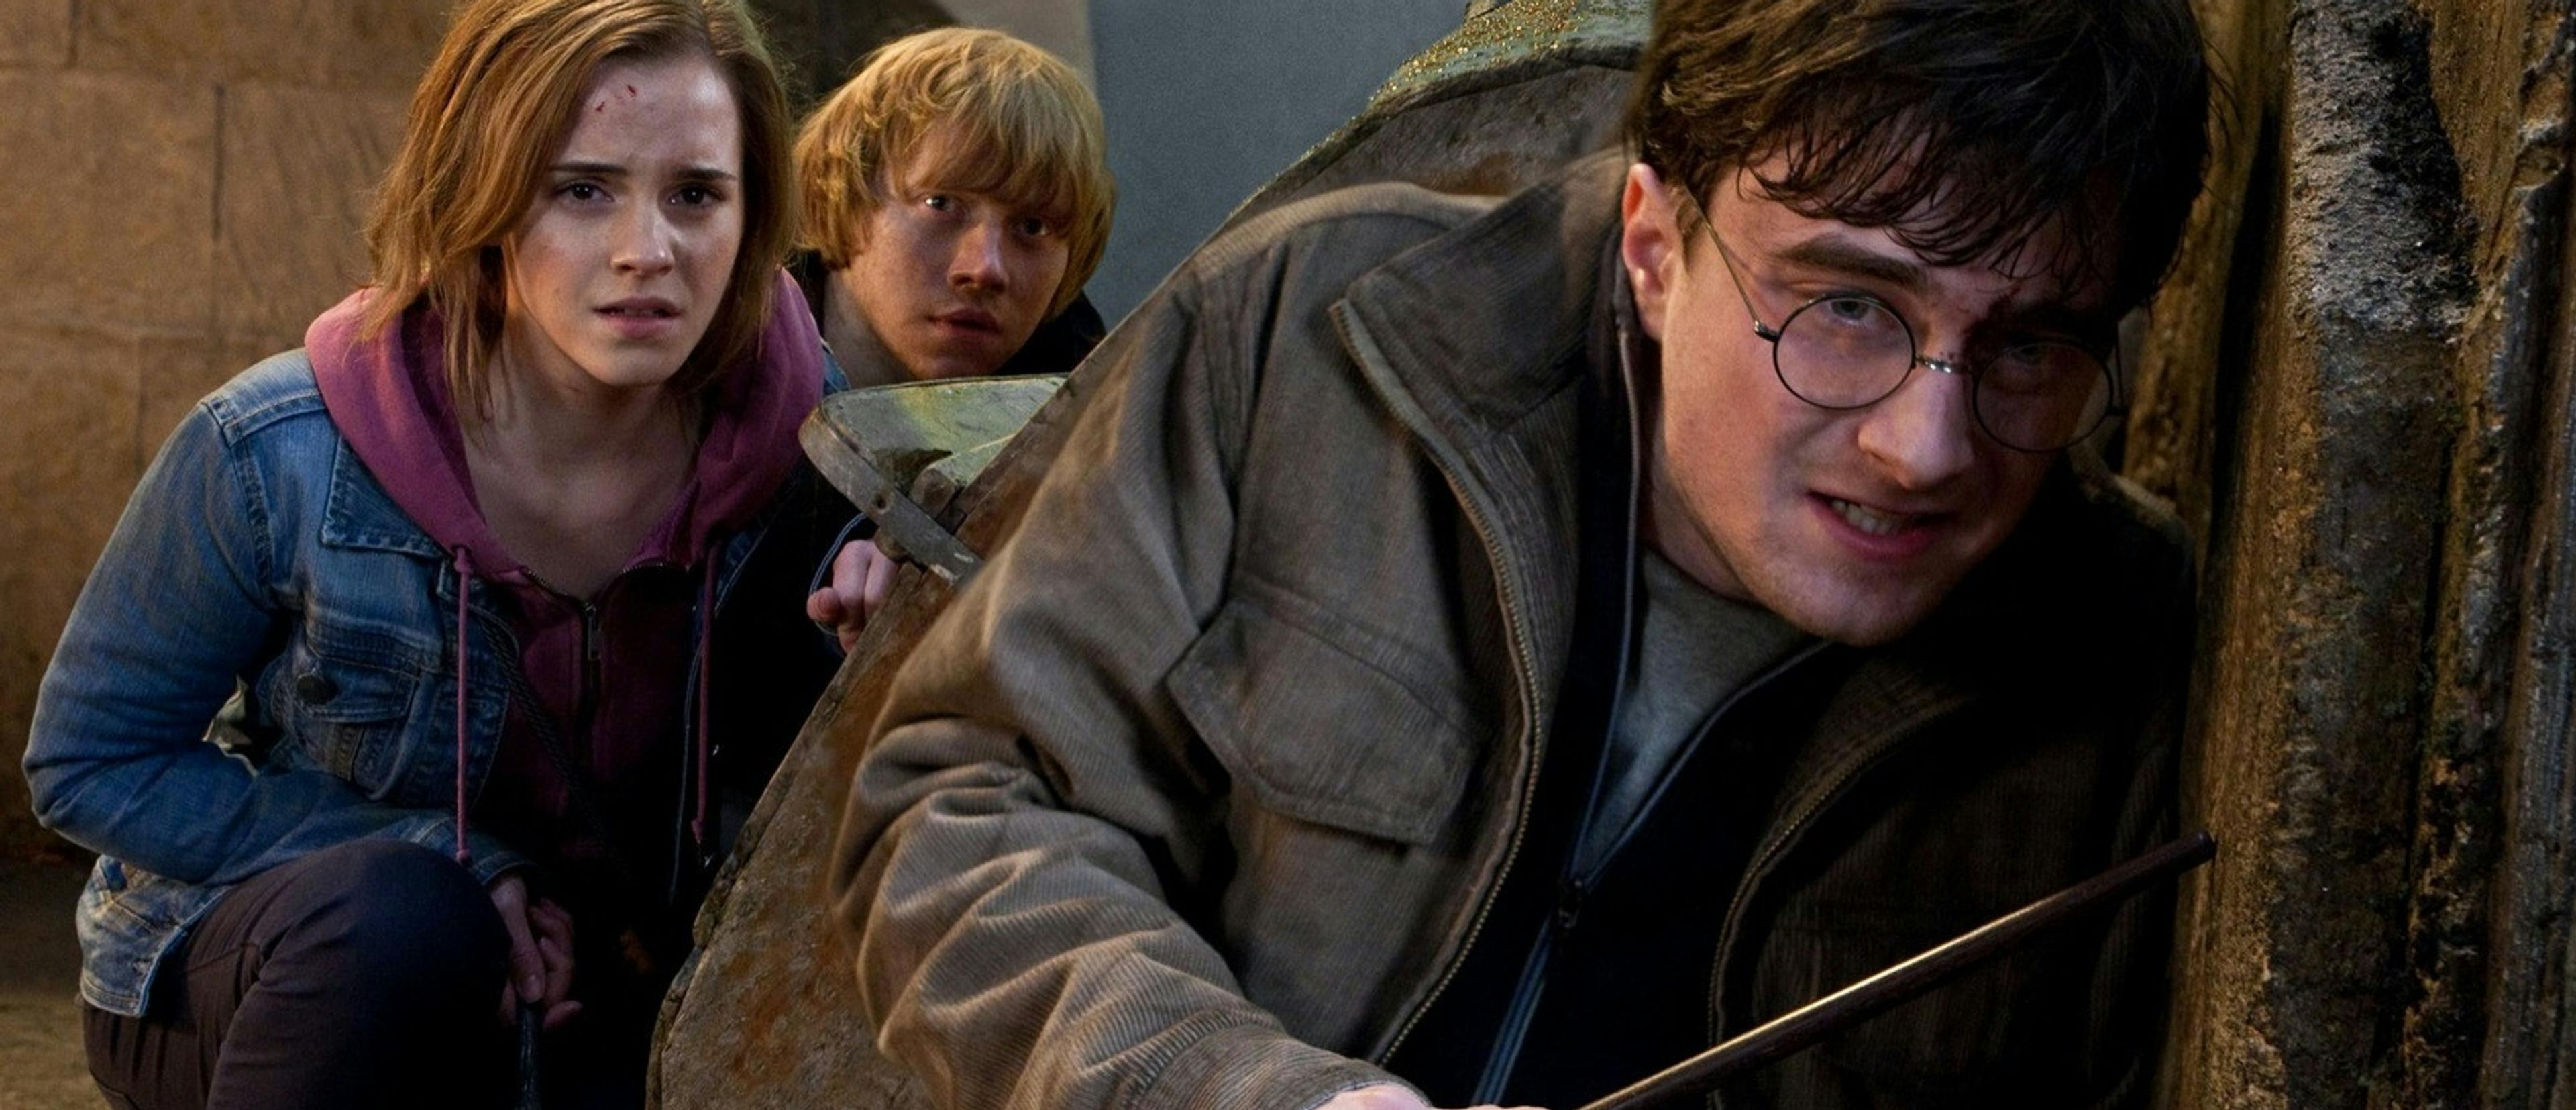  Daniel Radcliffe, Emma Watson y Rupert Grint, en una escena de 'Harry Potter'